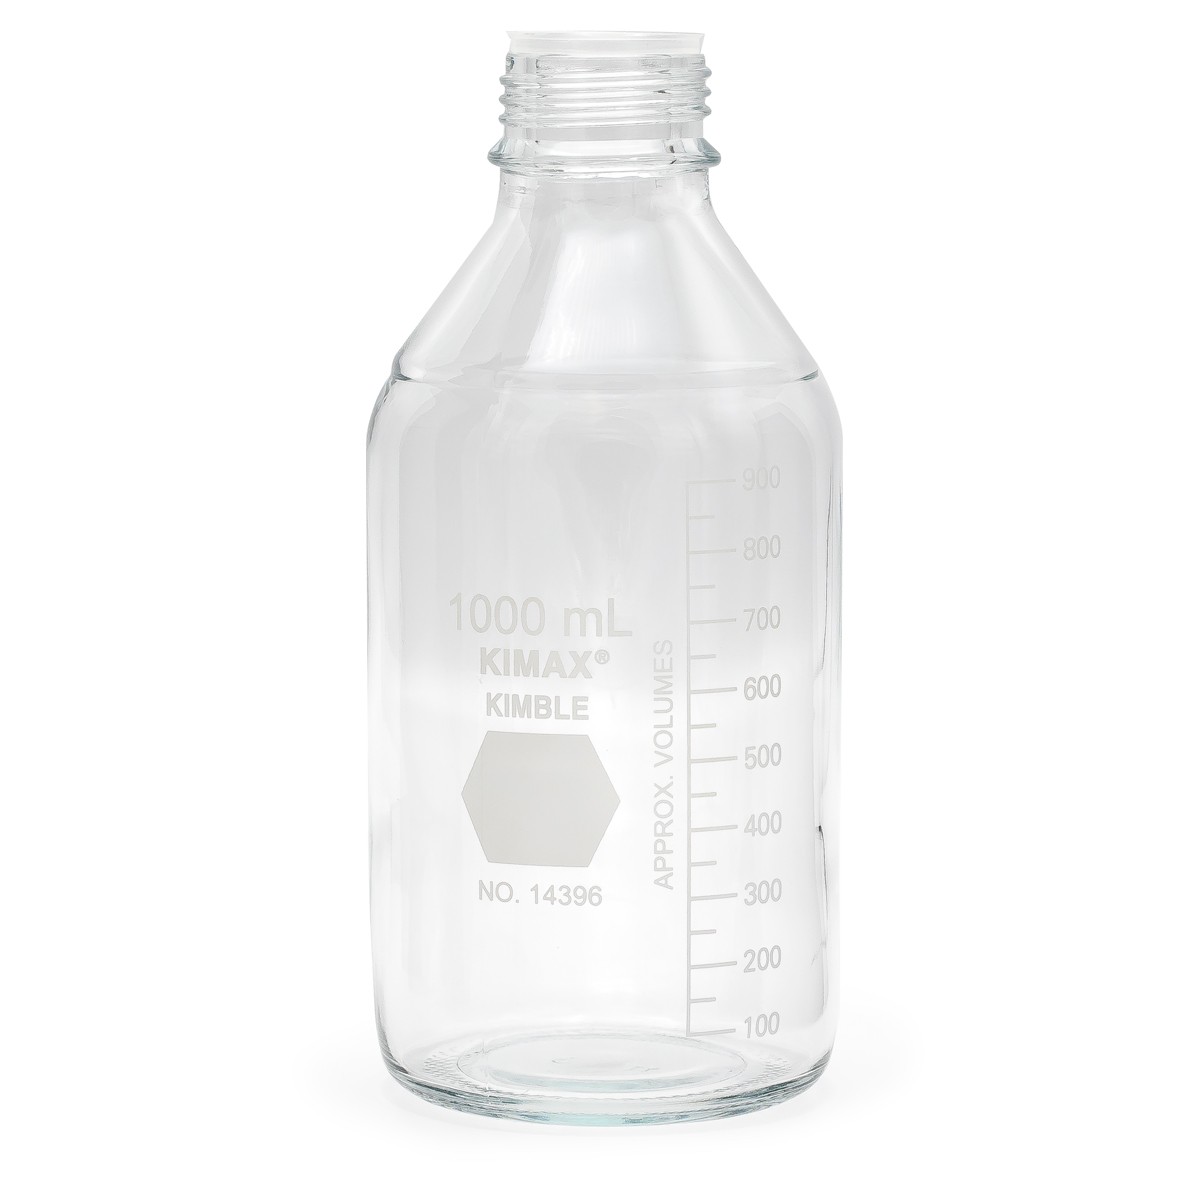 Reagent Waste Bottle for HI903 and HI904 Karl Fischer Titration Systems - HI900534